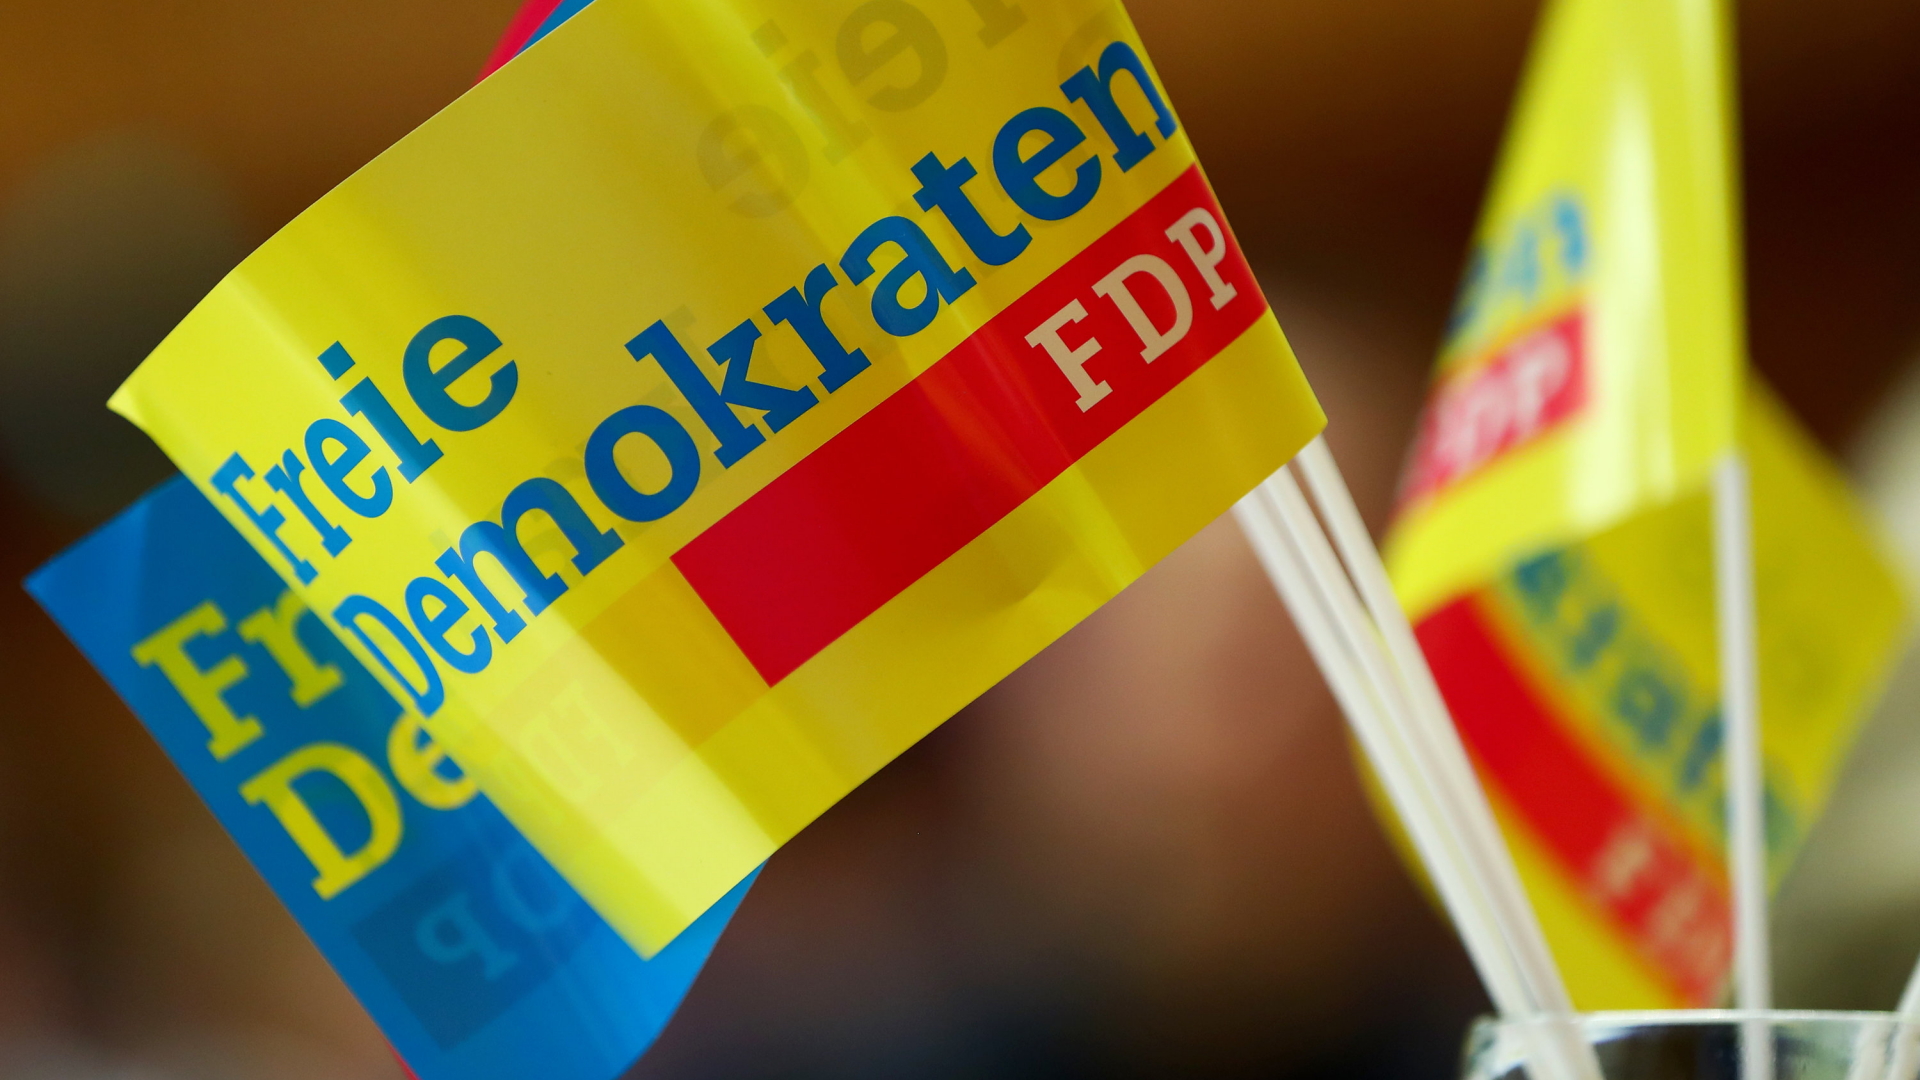 Fähnchen mit dem Schriftzug "Freie Demokraten" und "FDP". | dpa